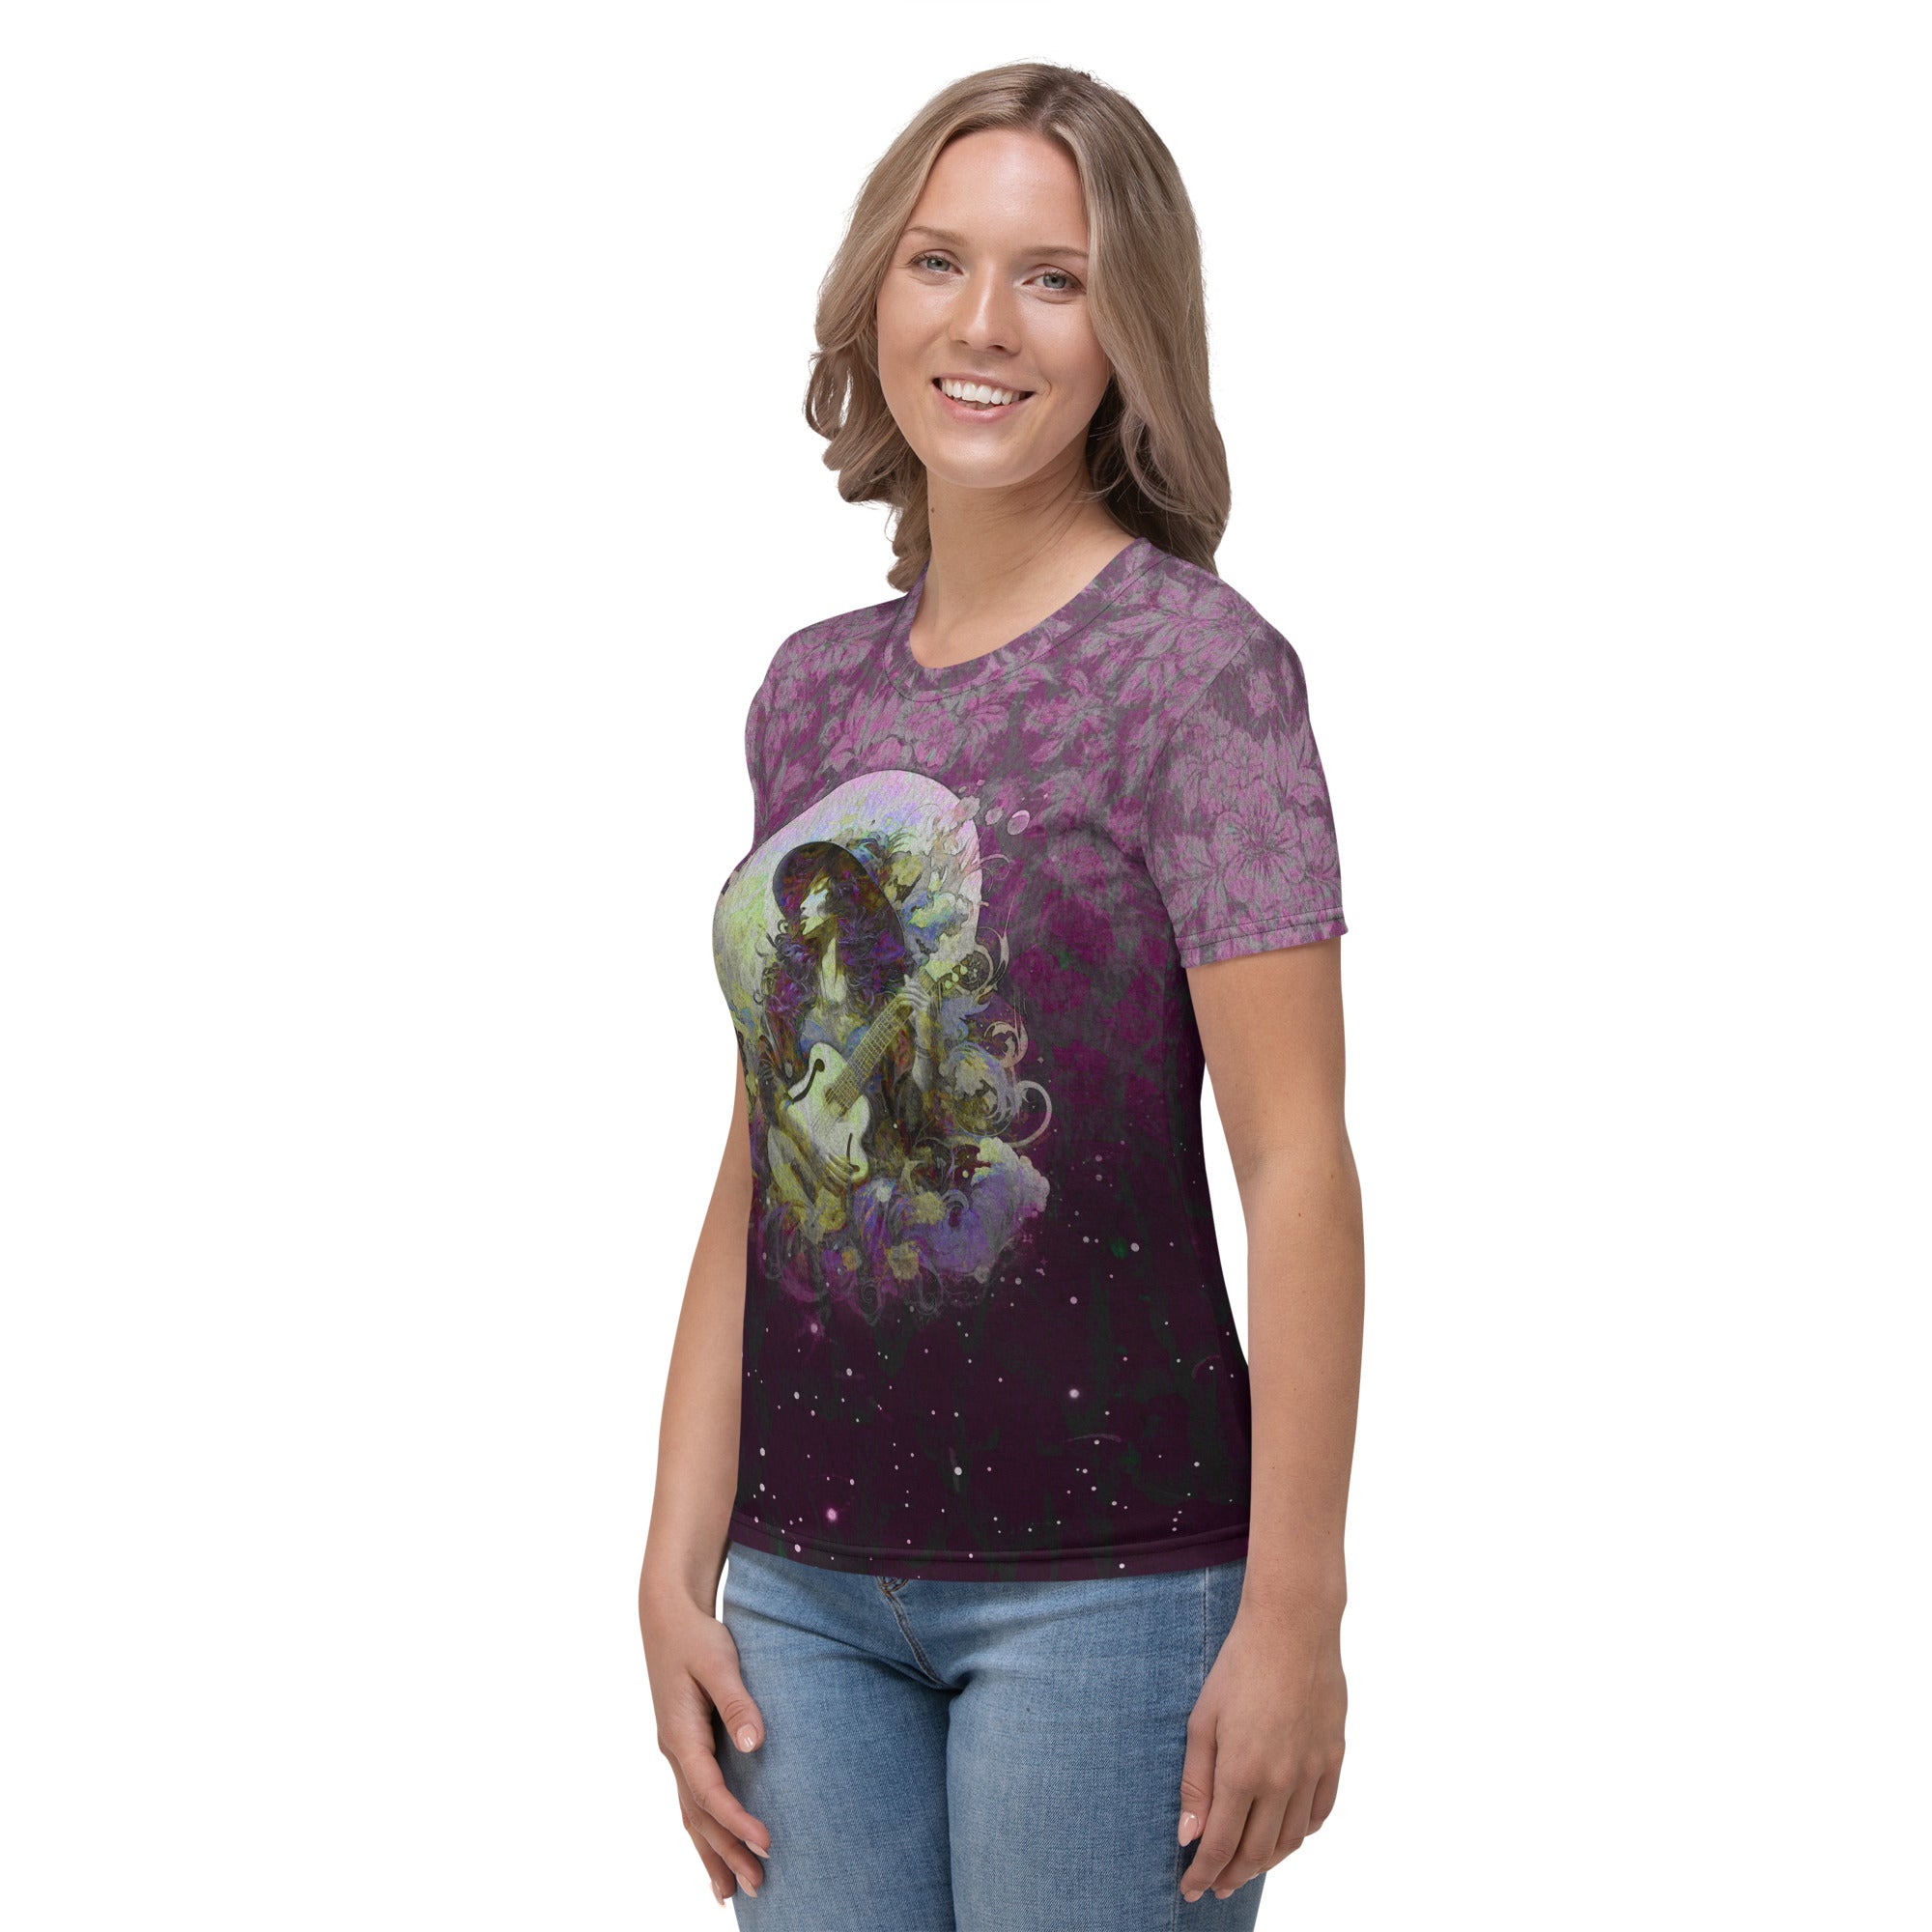 Percussive Petals Pulse Women's T-Shirt